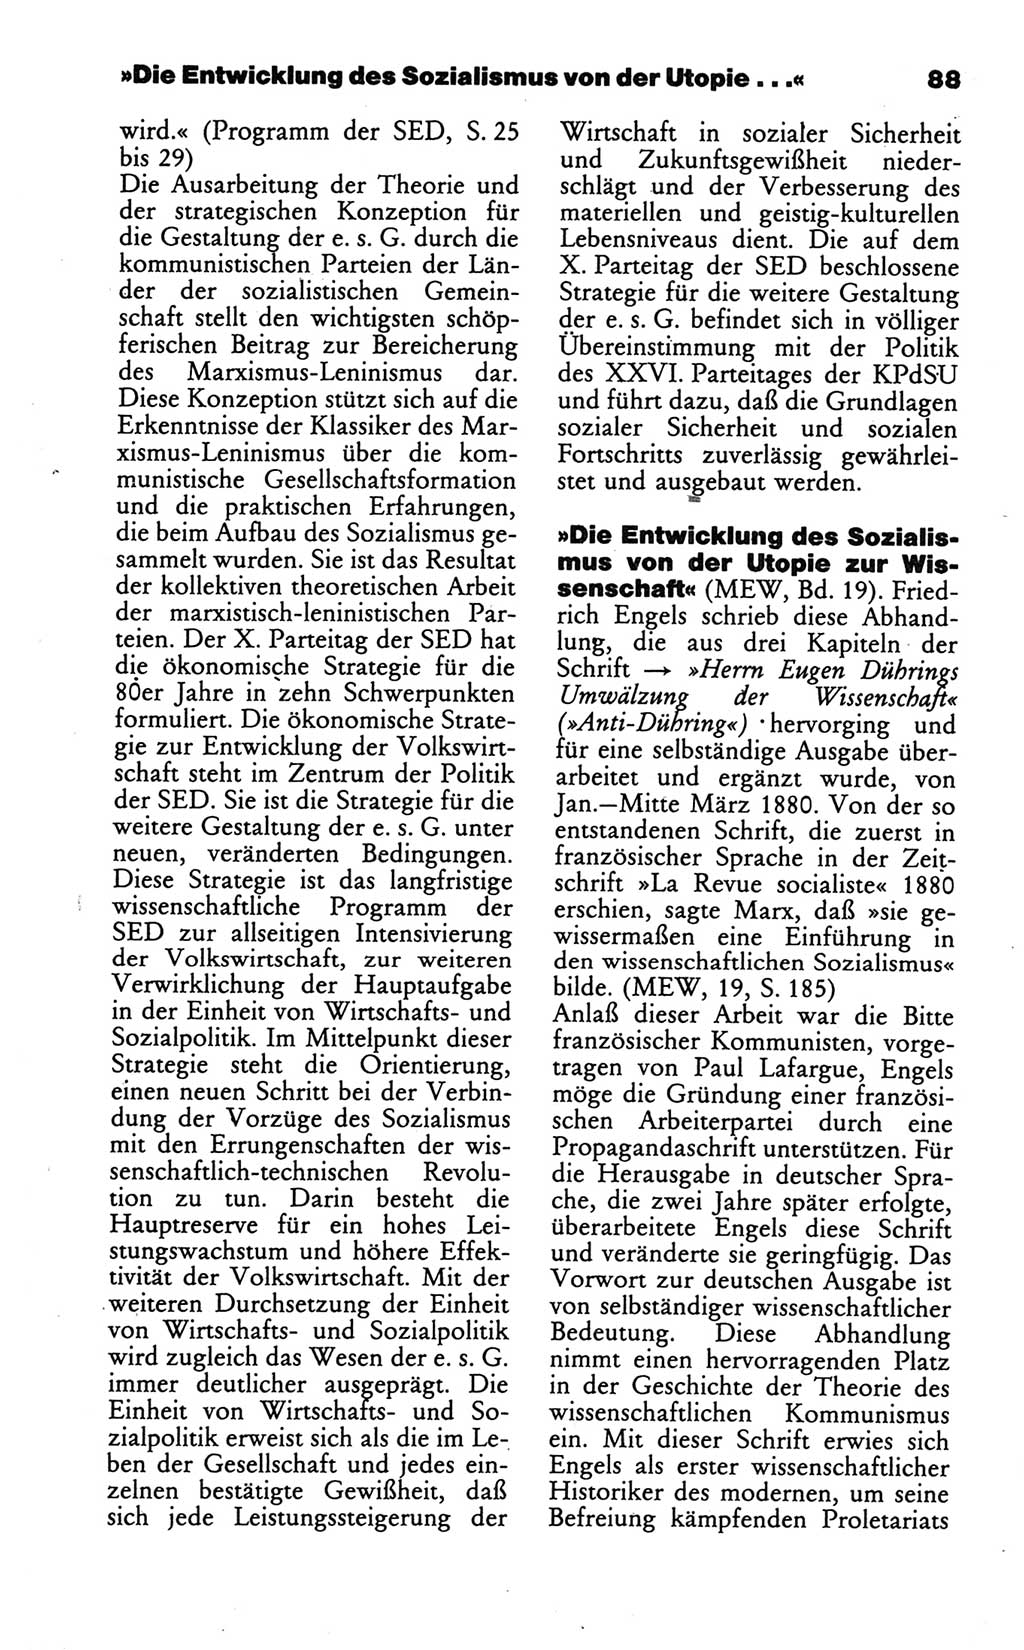 Wörterbuch des wissenschaftlichen Kommunismus [Deutsche Demokratische Republik (DDR)] 1986, Seite 88 (Wb. wiss. Komm. DDR 1986, S. 88)